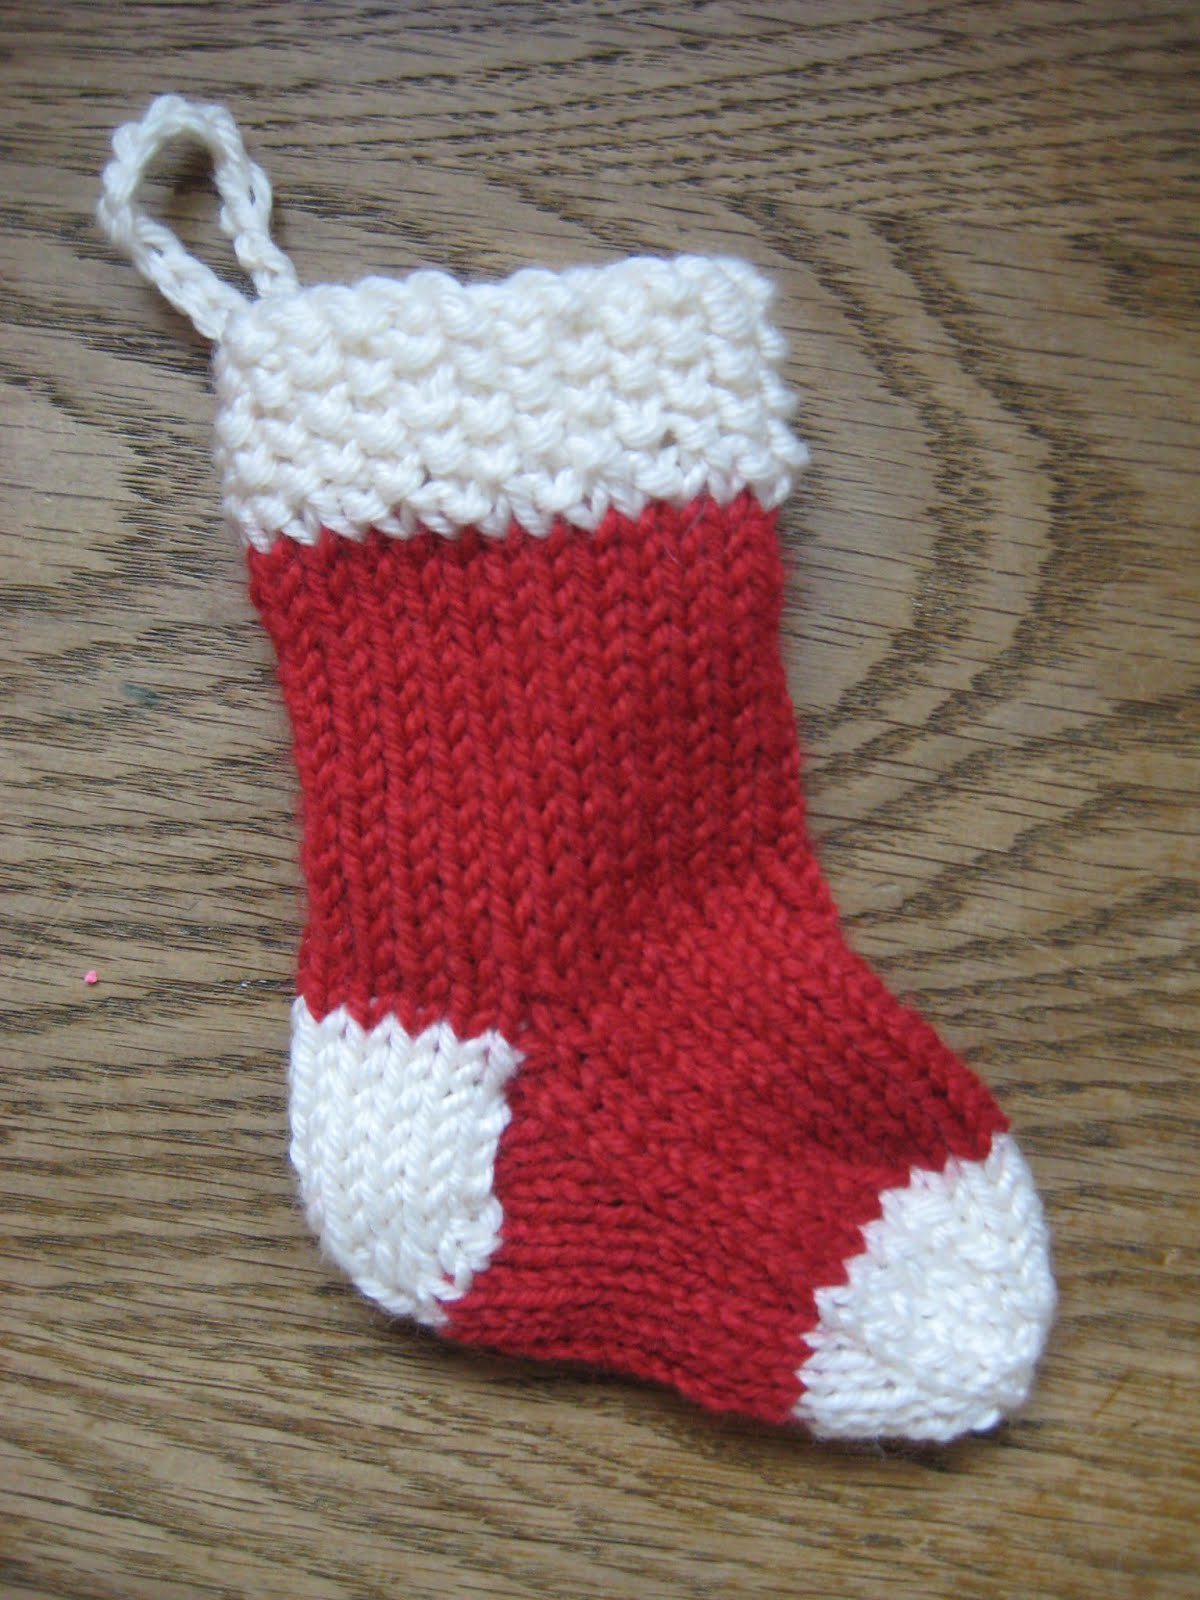 Free Knit Christmas Stocking Pattern Knitting Pattern For Christmas Stocking Ornament